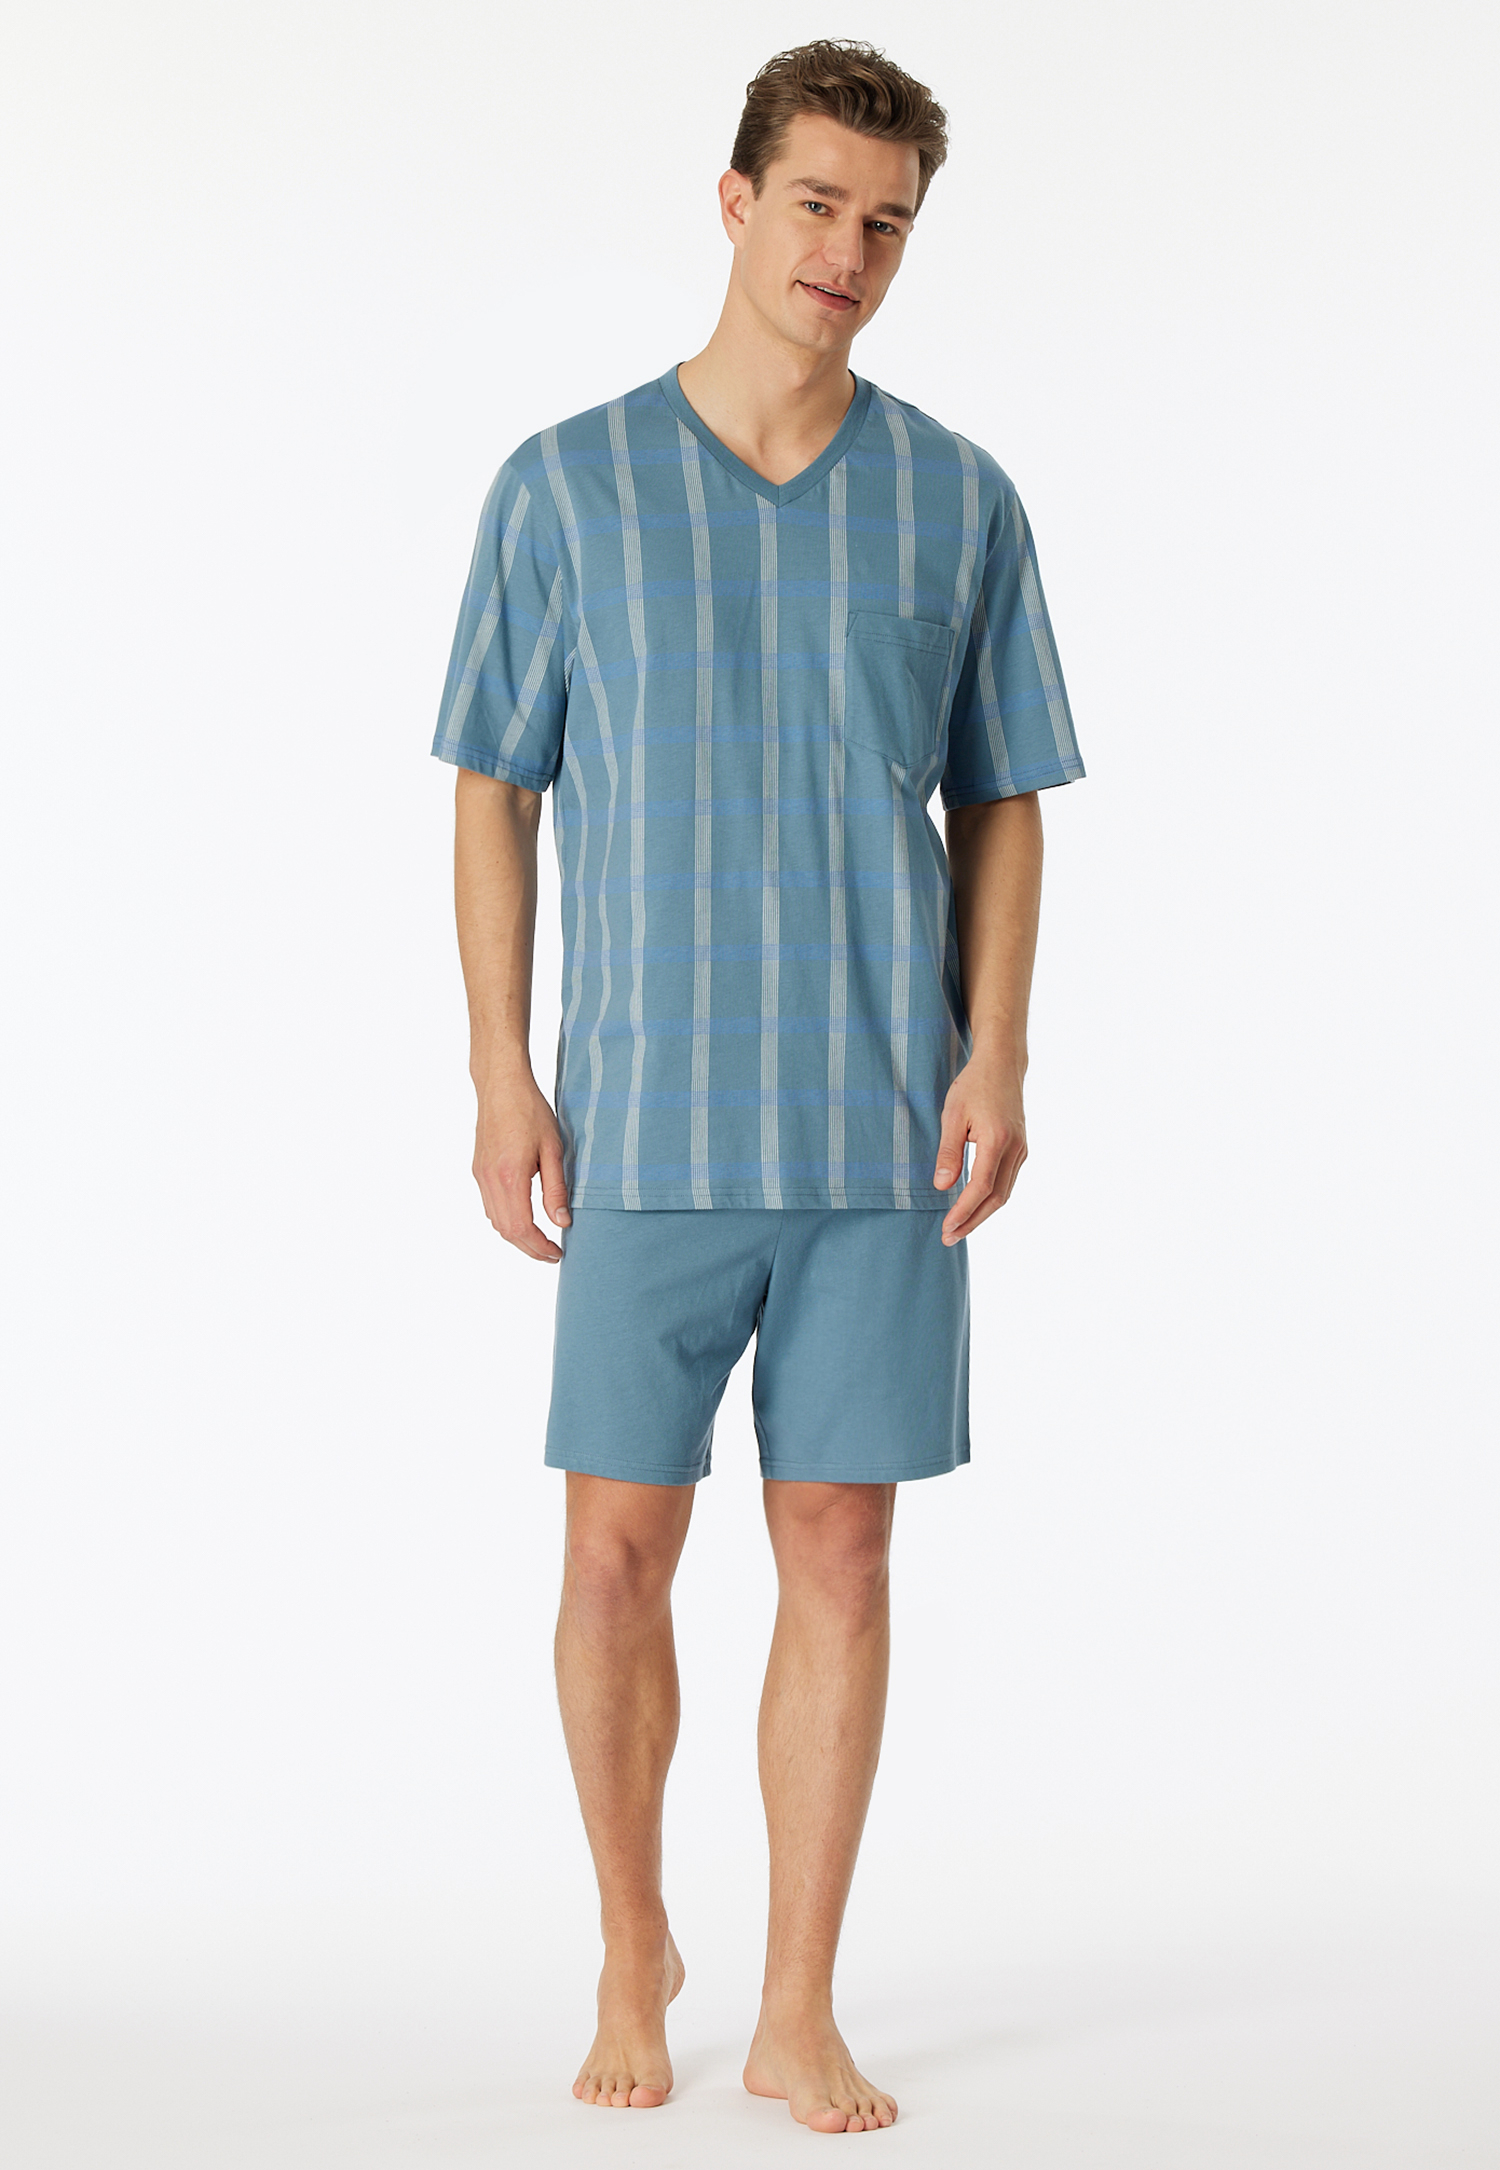 Schlafanzug kurz Organic Cotton V-Ausschnitt Brusttasche blaugrau kariert - Comfort Nightwear 60 von Schiesser